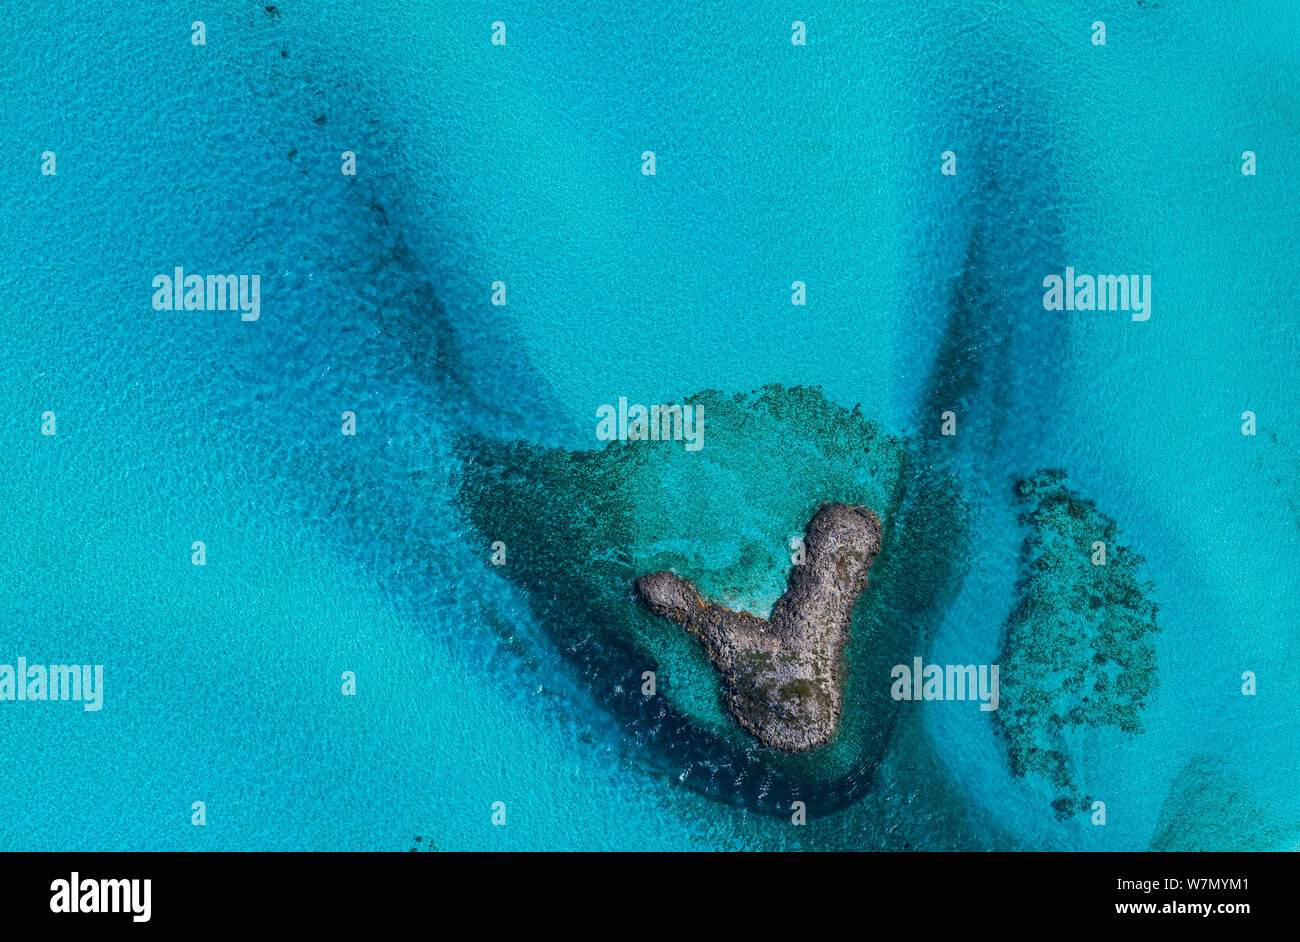 Imagen aérea que muestra el mar alrededor de bancos de arena e islas del archipiélago de las Bahamas, el Caribe, febrero de 2012 Foto de stock